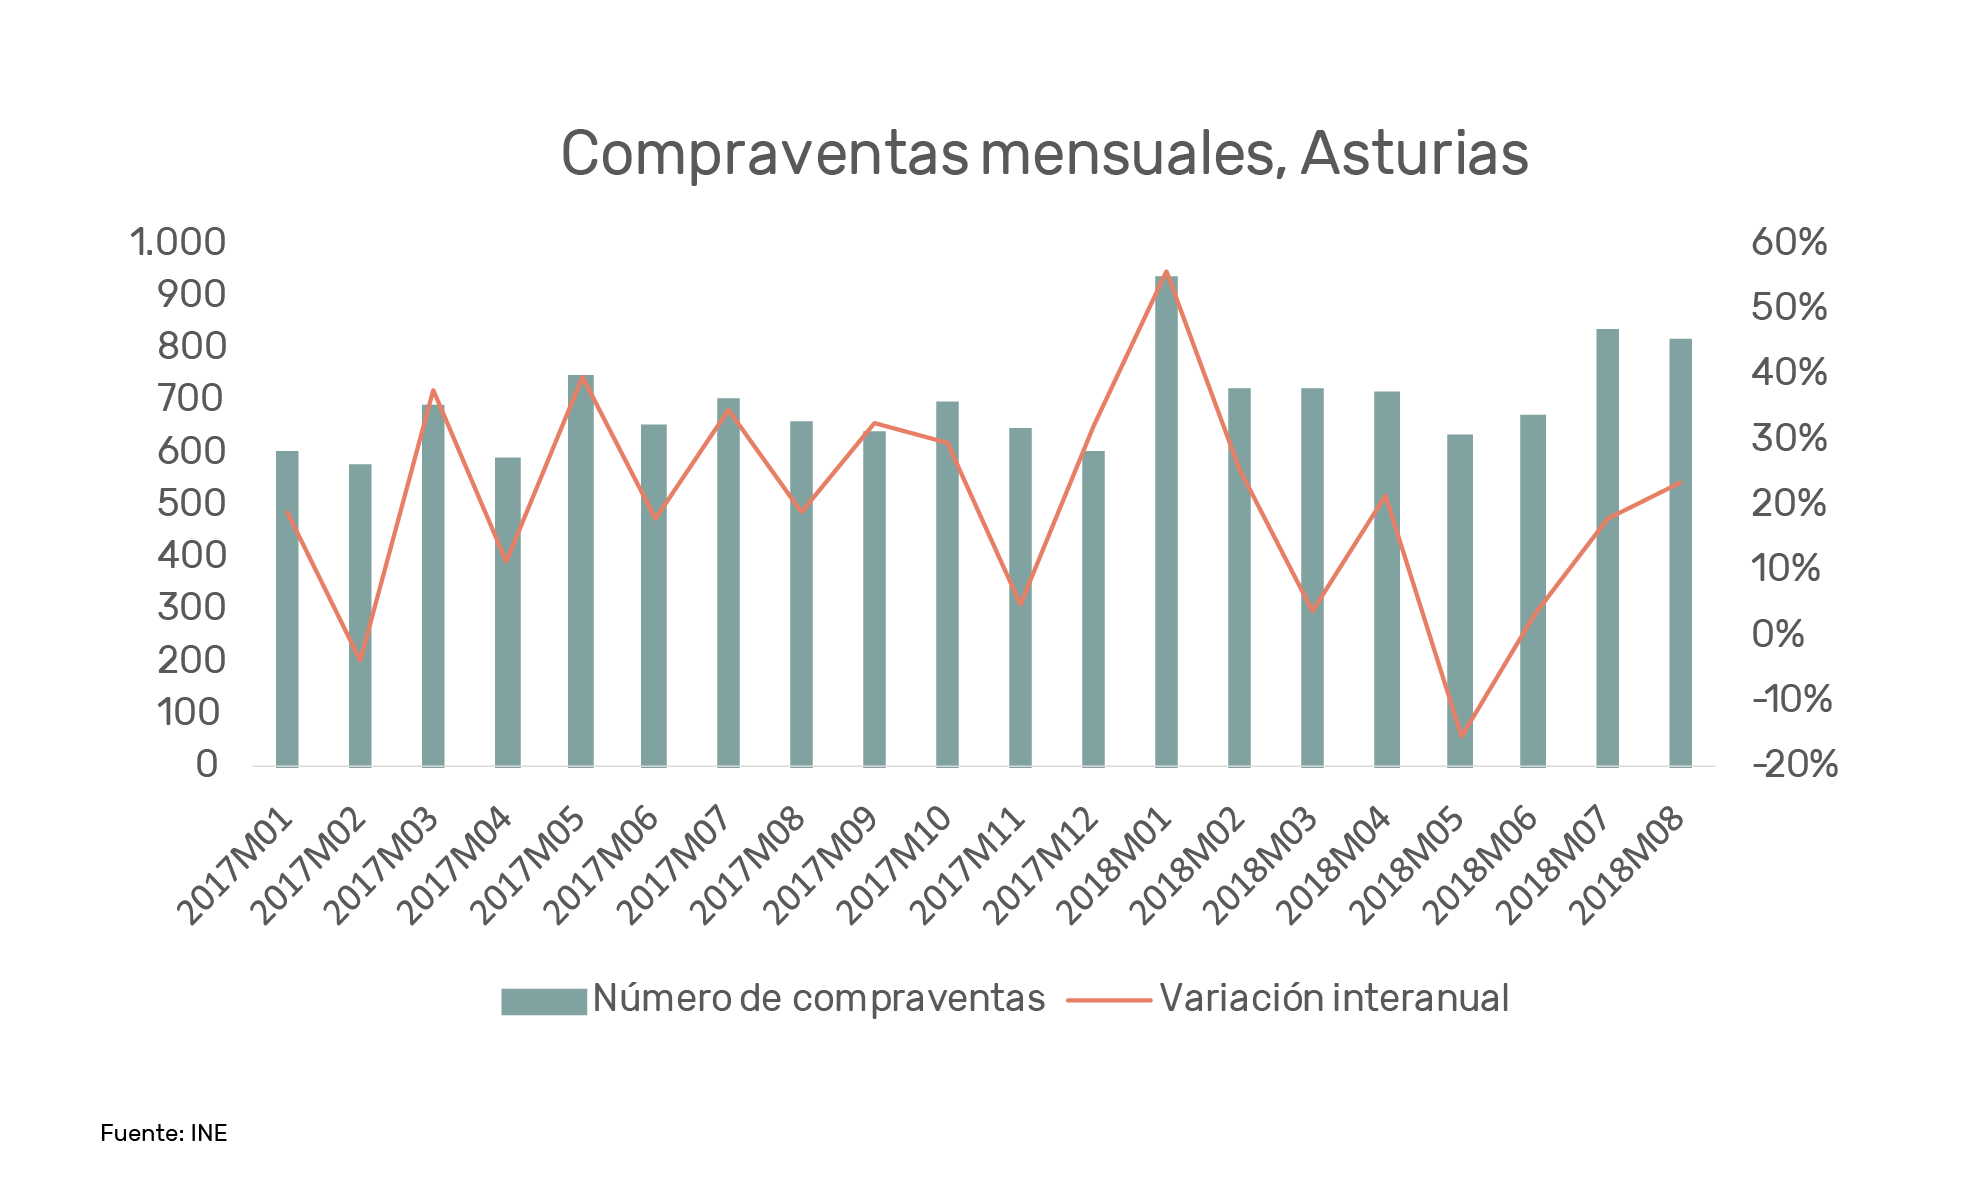 Invertir en Asturias, compraventas mensuales Llanes